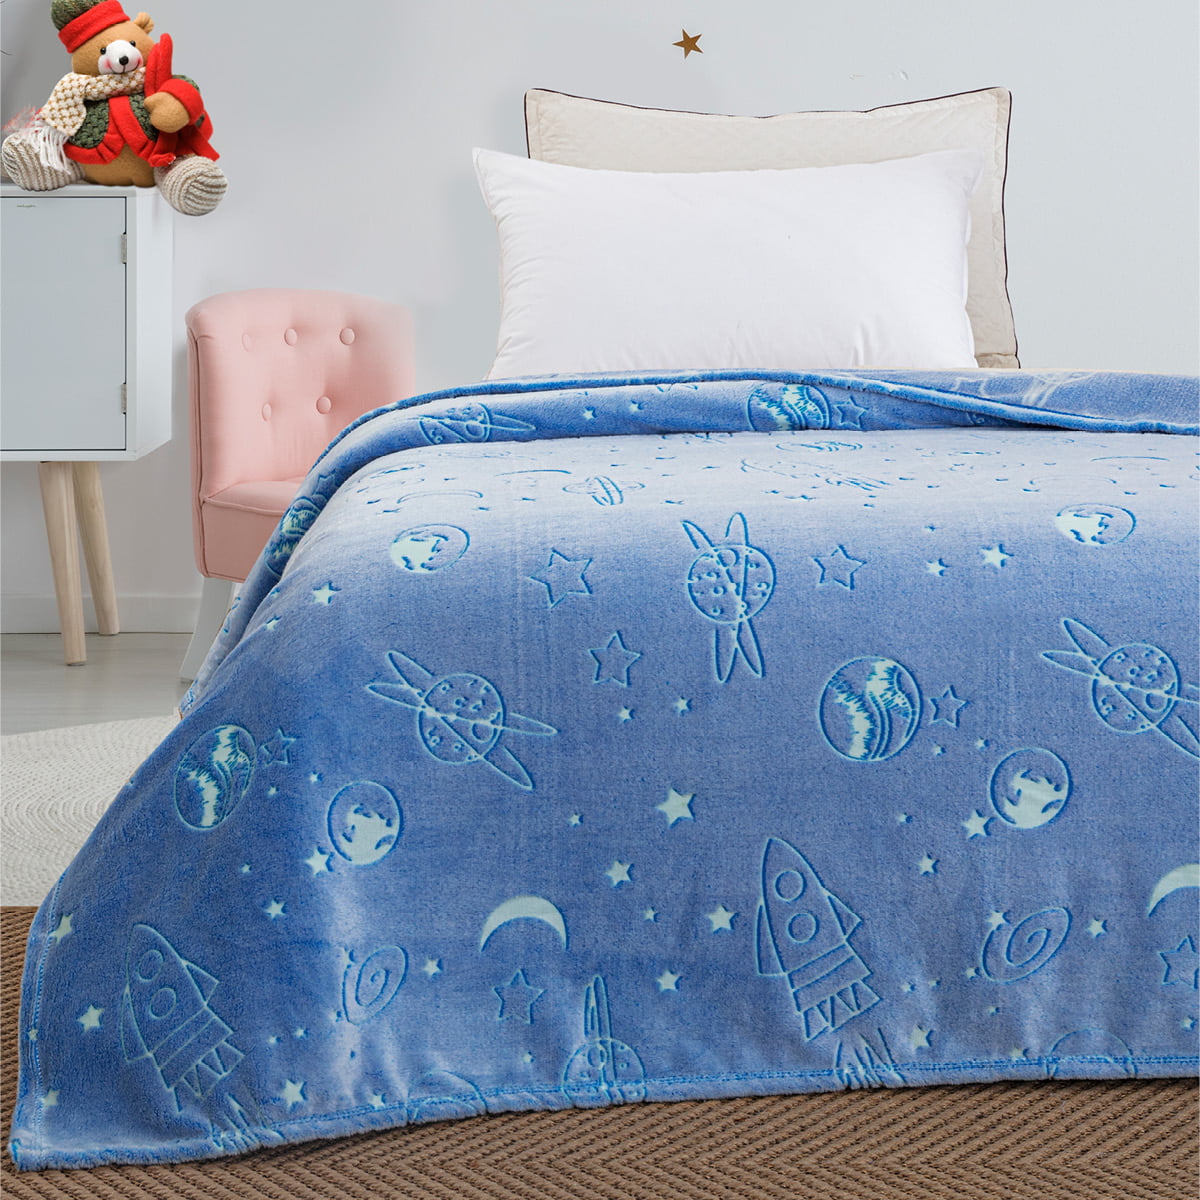 Κουβέρτα μονή φωσφορίζουσα Art 6139  160×220 Γαλάζιο Beauty Home